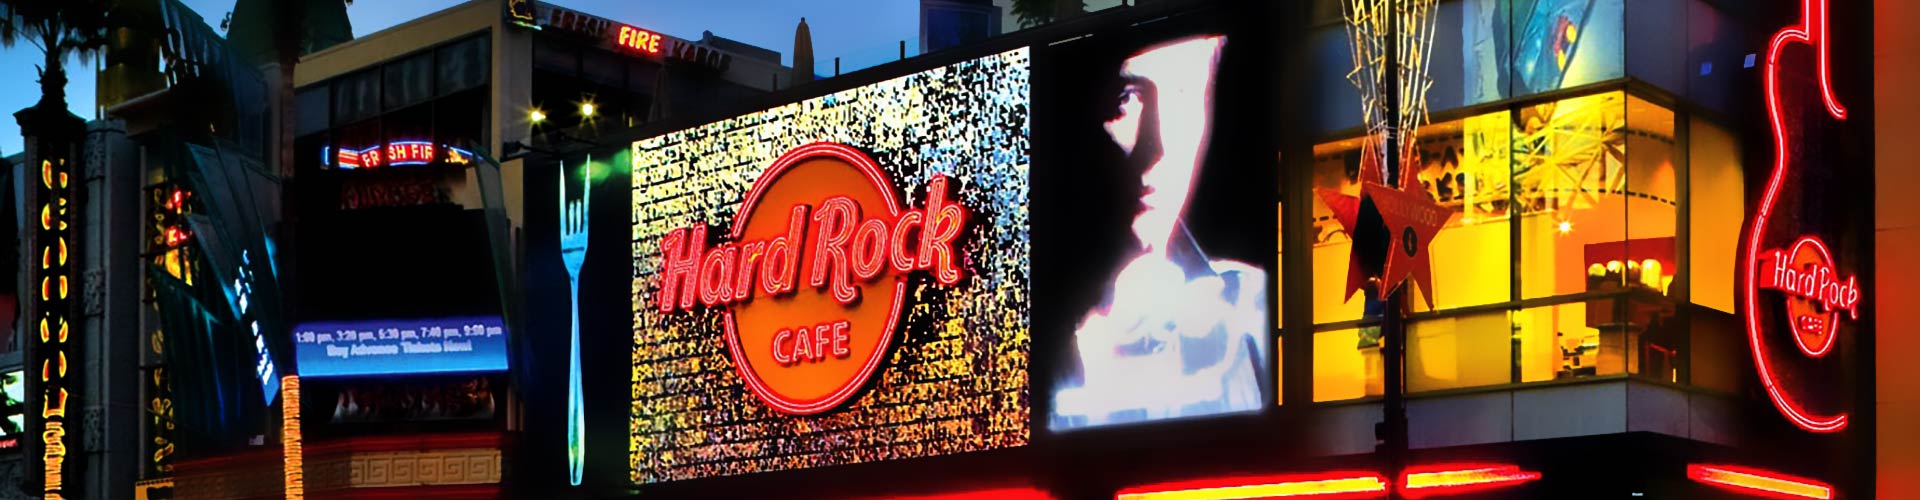 Hard Rock Cafe Header 1920x500